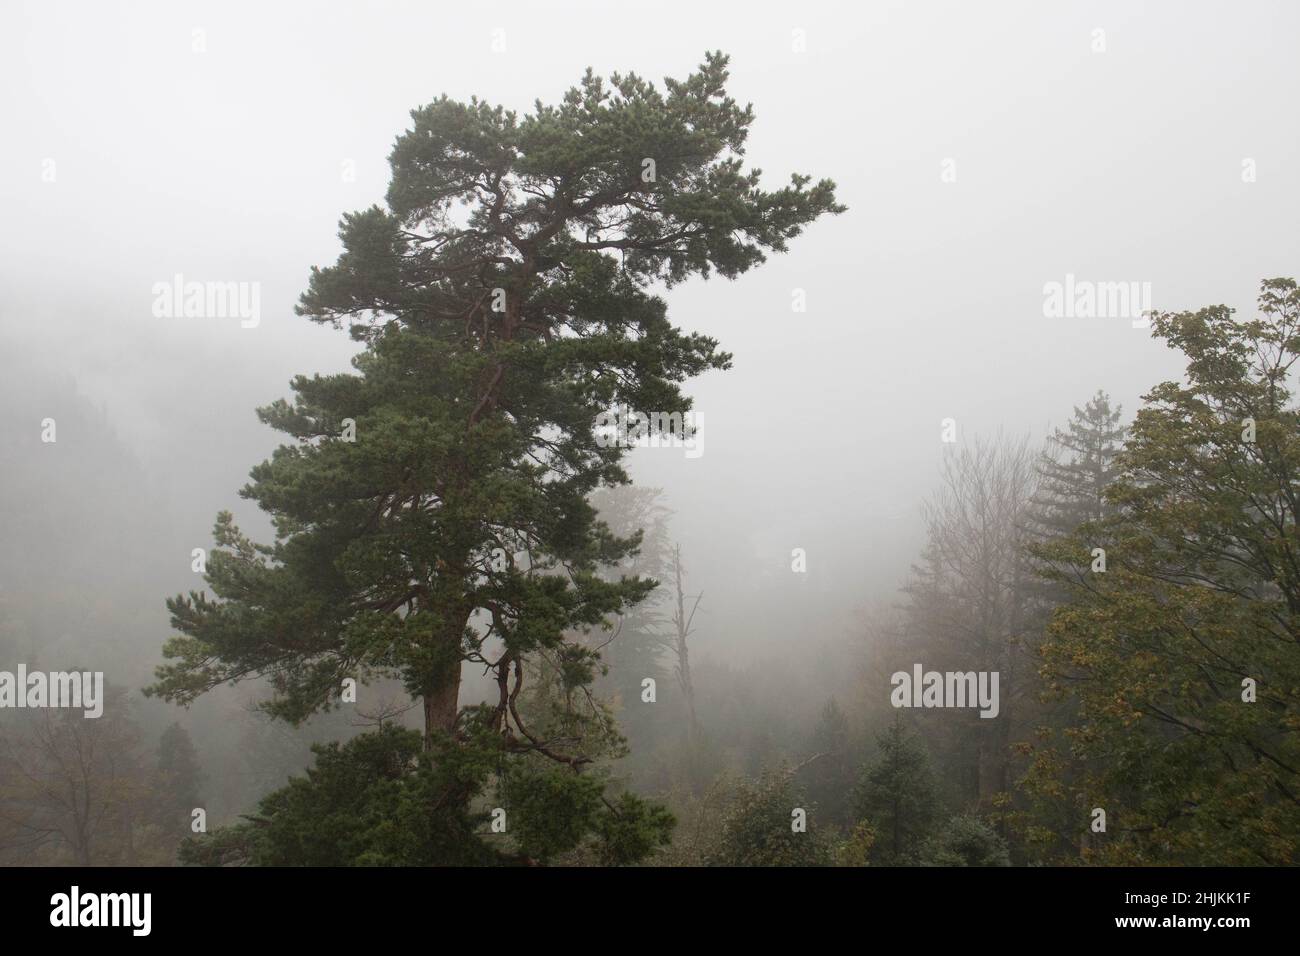 Wie eine Malerei wirkt diese Landschaftsfotografie eines Baumes im nebeligen Wald Foto de stock